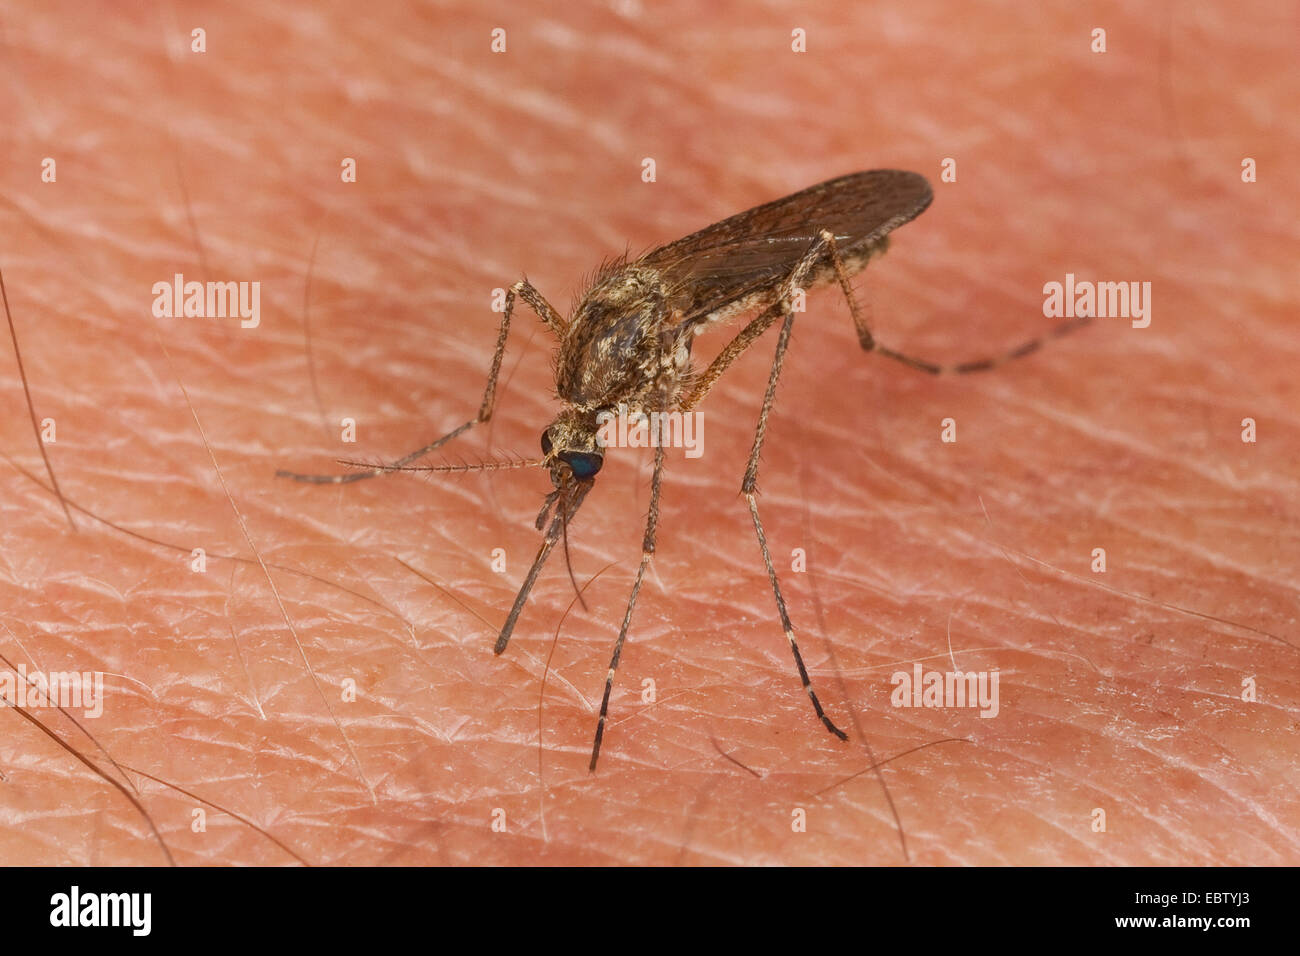 Zanzara, moscerino (Aedes spec.), femmina seduto sulla pelle umana succhiare il sangue , Germania Foto Stock